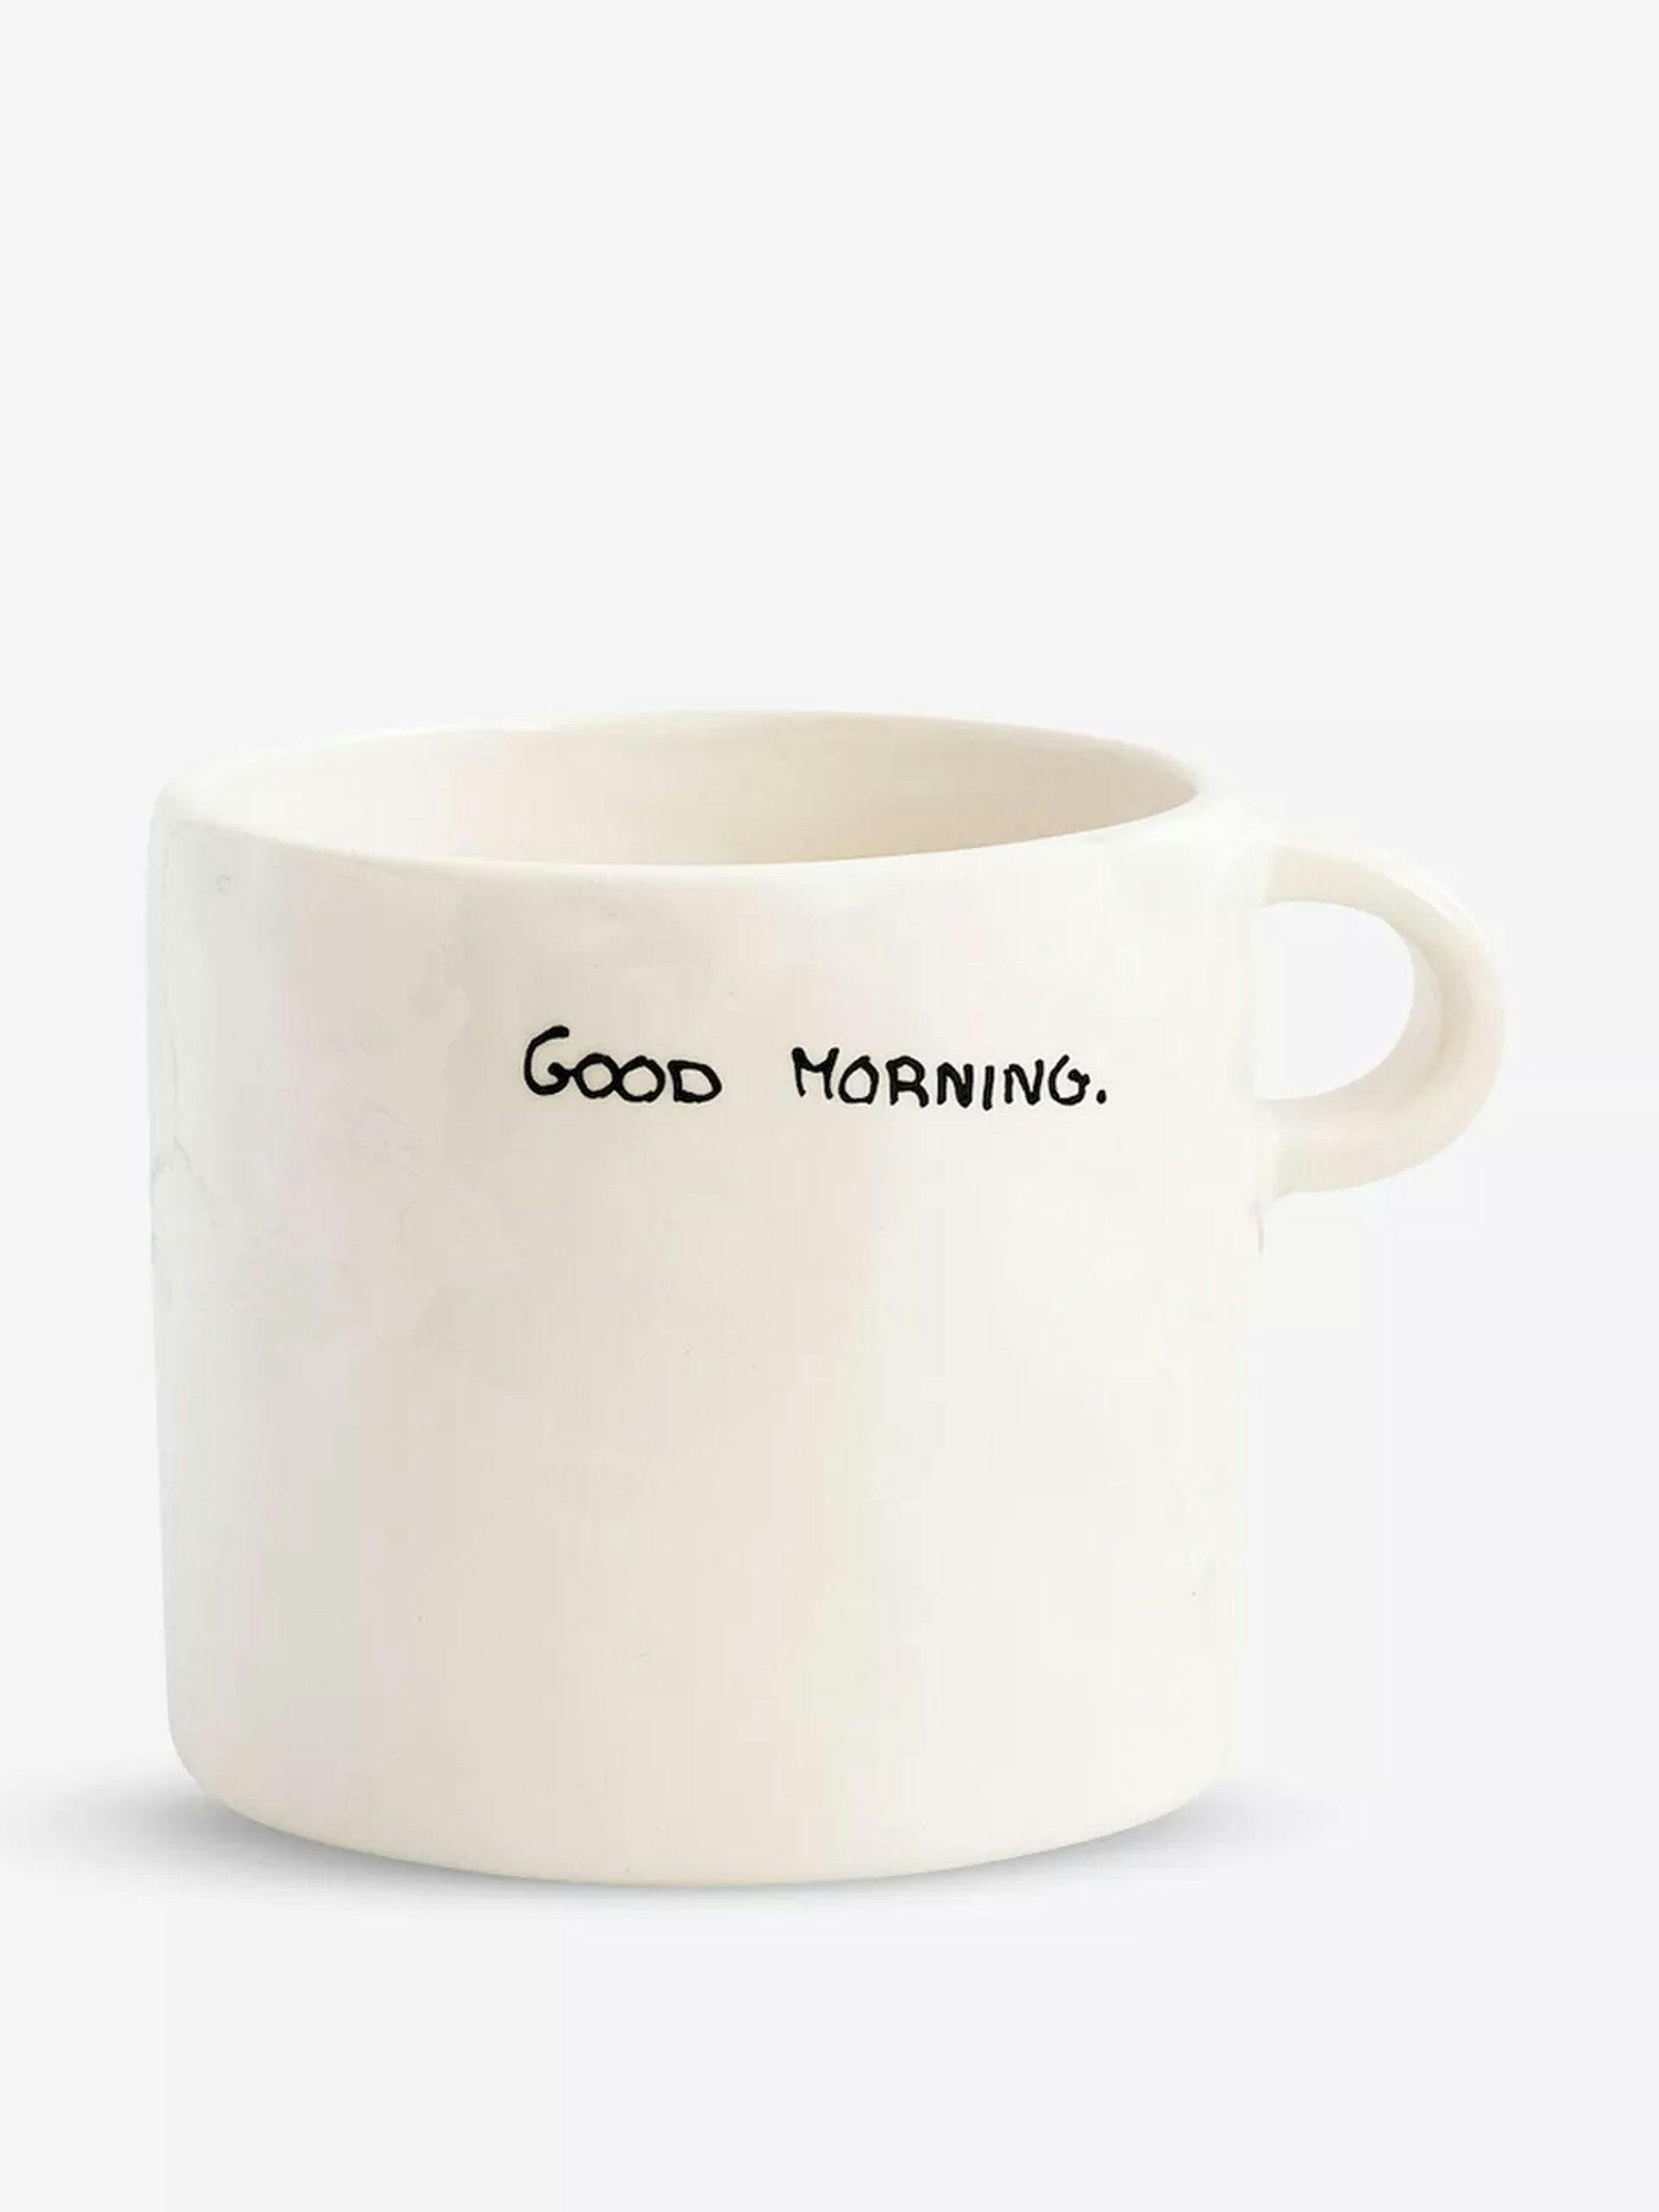 Good Morning ceramic mug